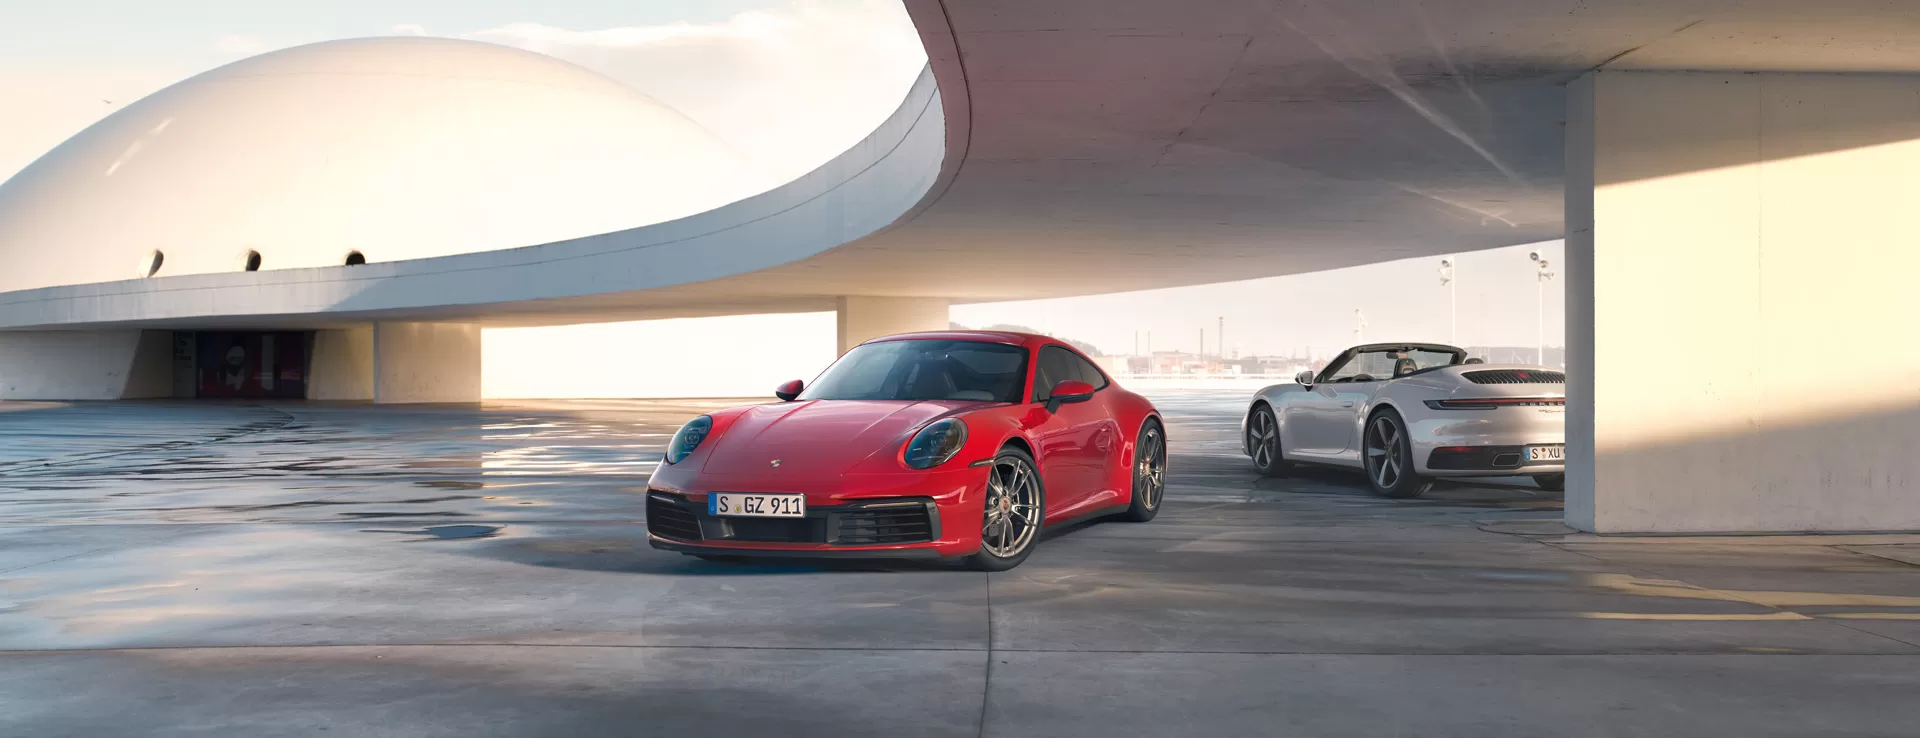 Будущее спортивных автомобилей Porsche — сочетание традиционных ценностей с технологиями завтрашнего дня